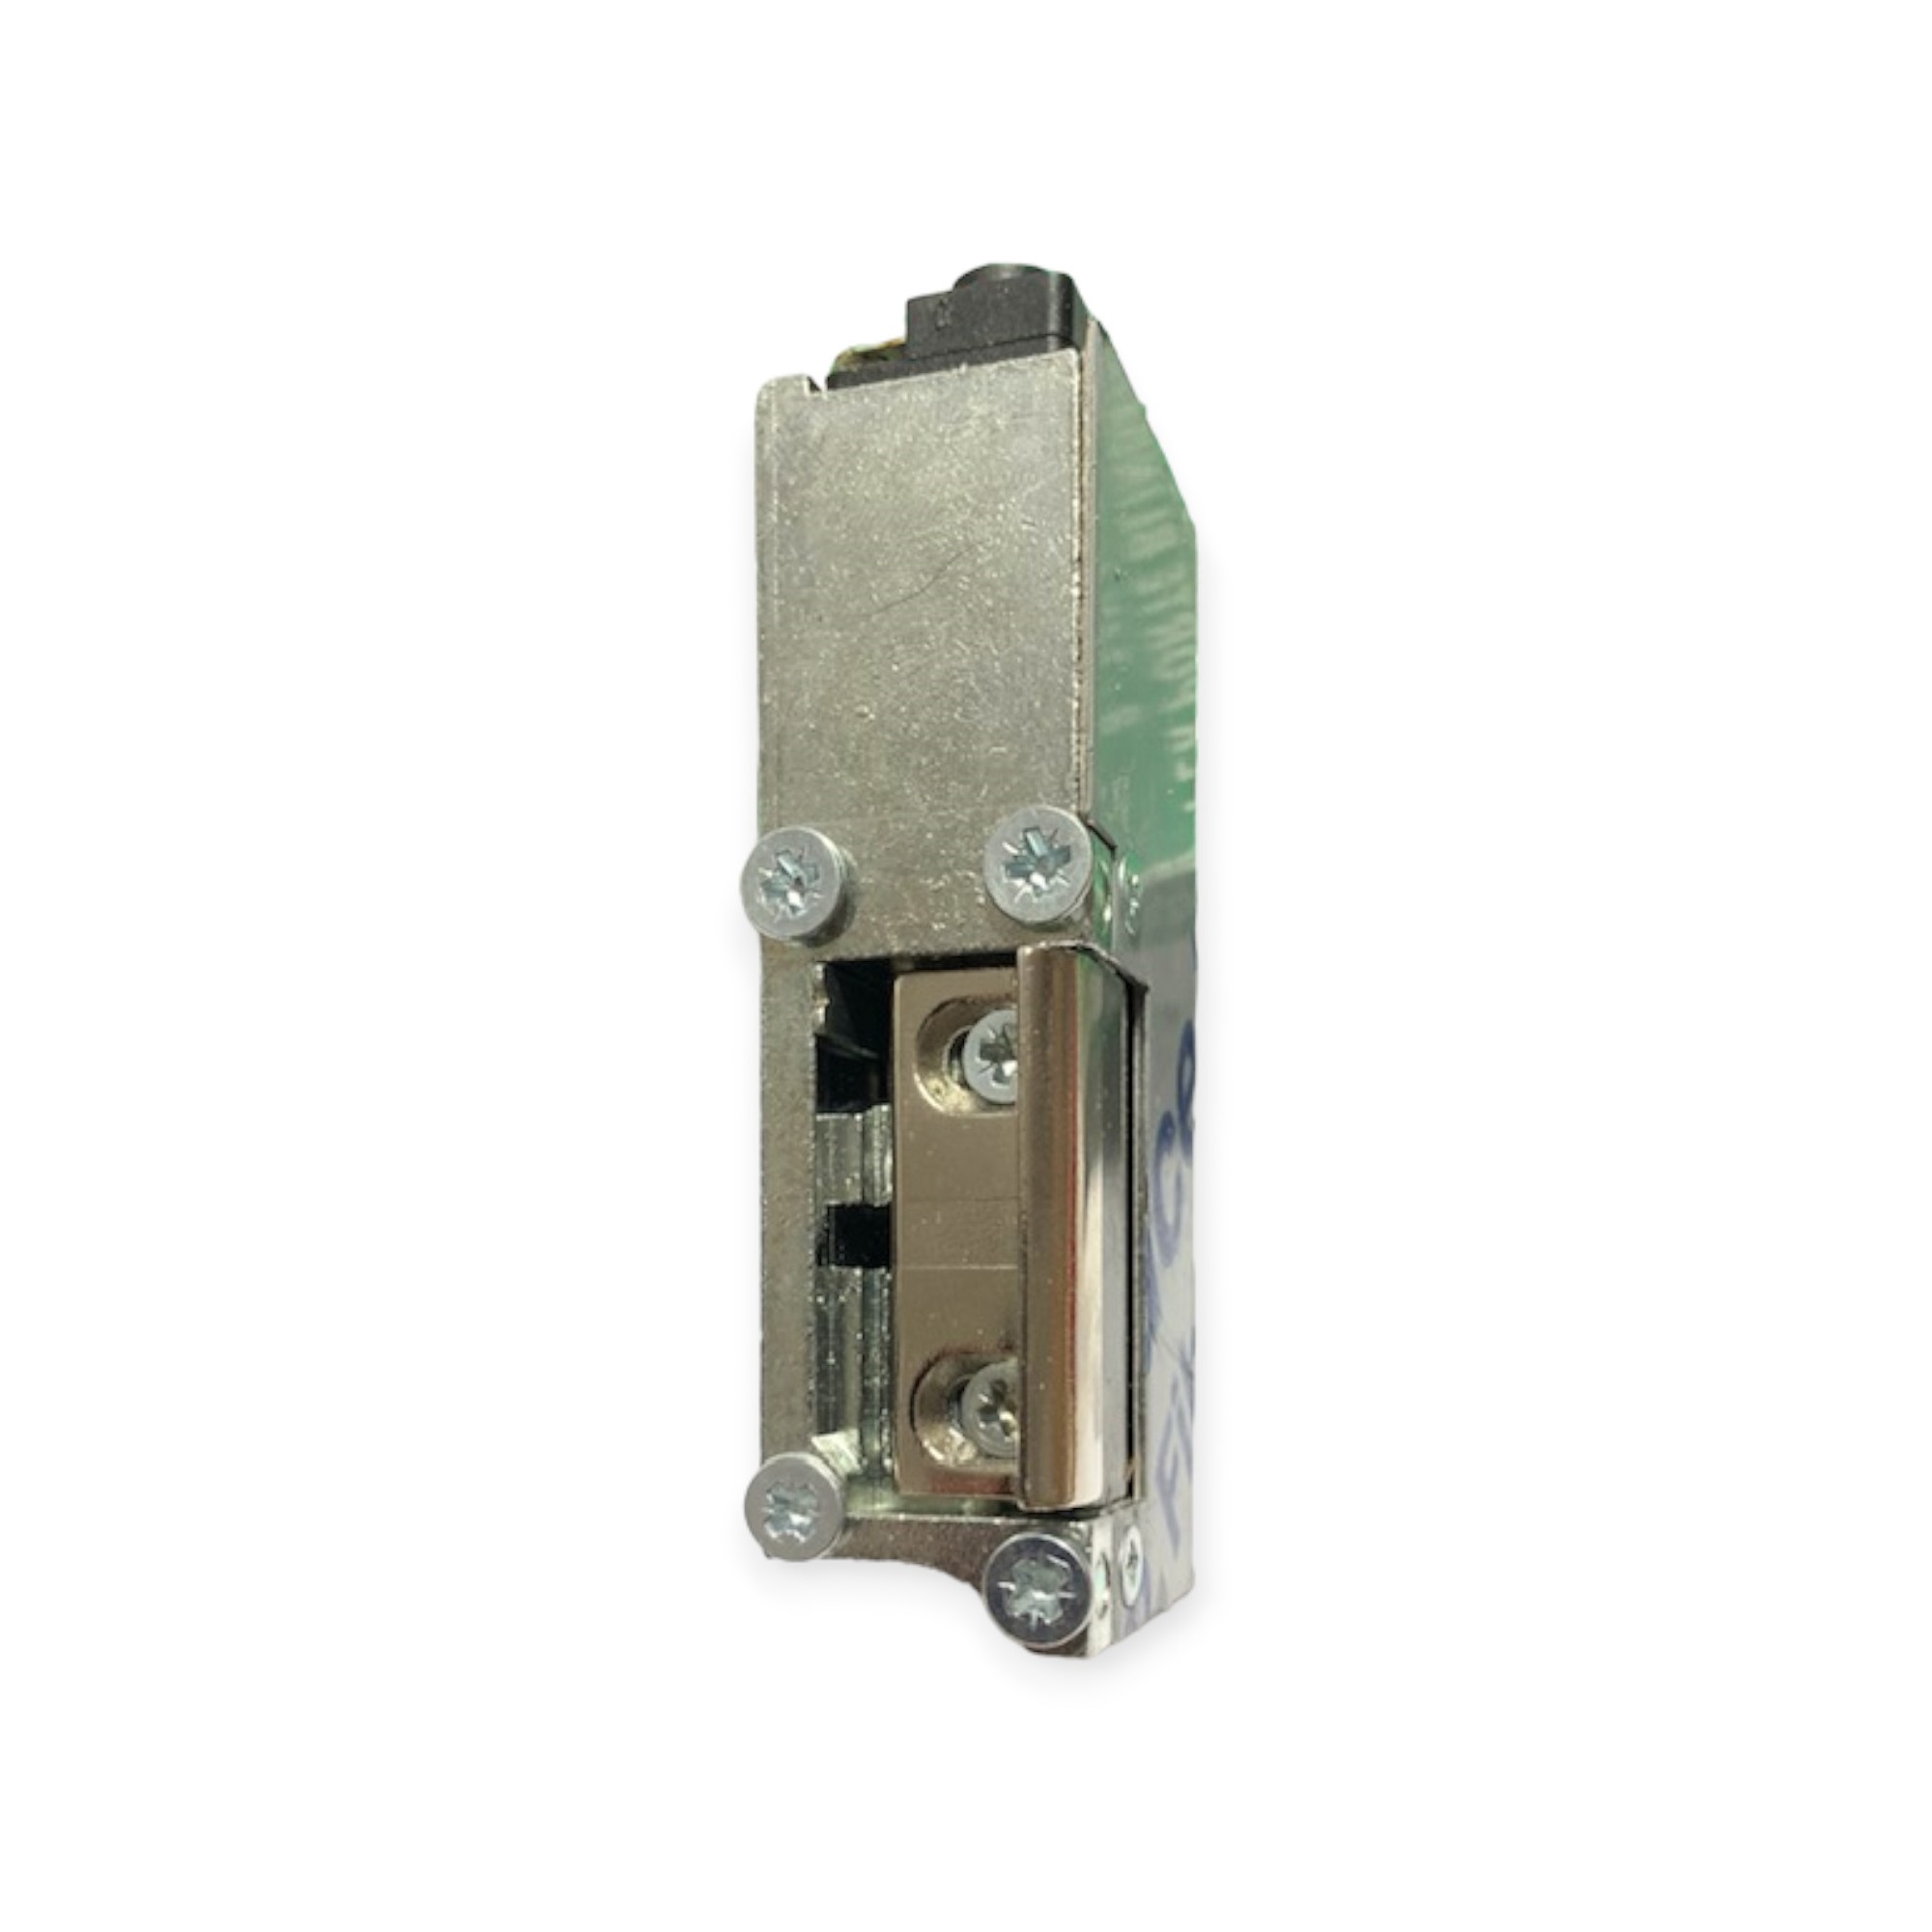 INCONTRO ELETTRICO tipo EFF-EFF 12 V. per serrature di porte blindate